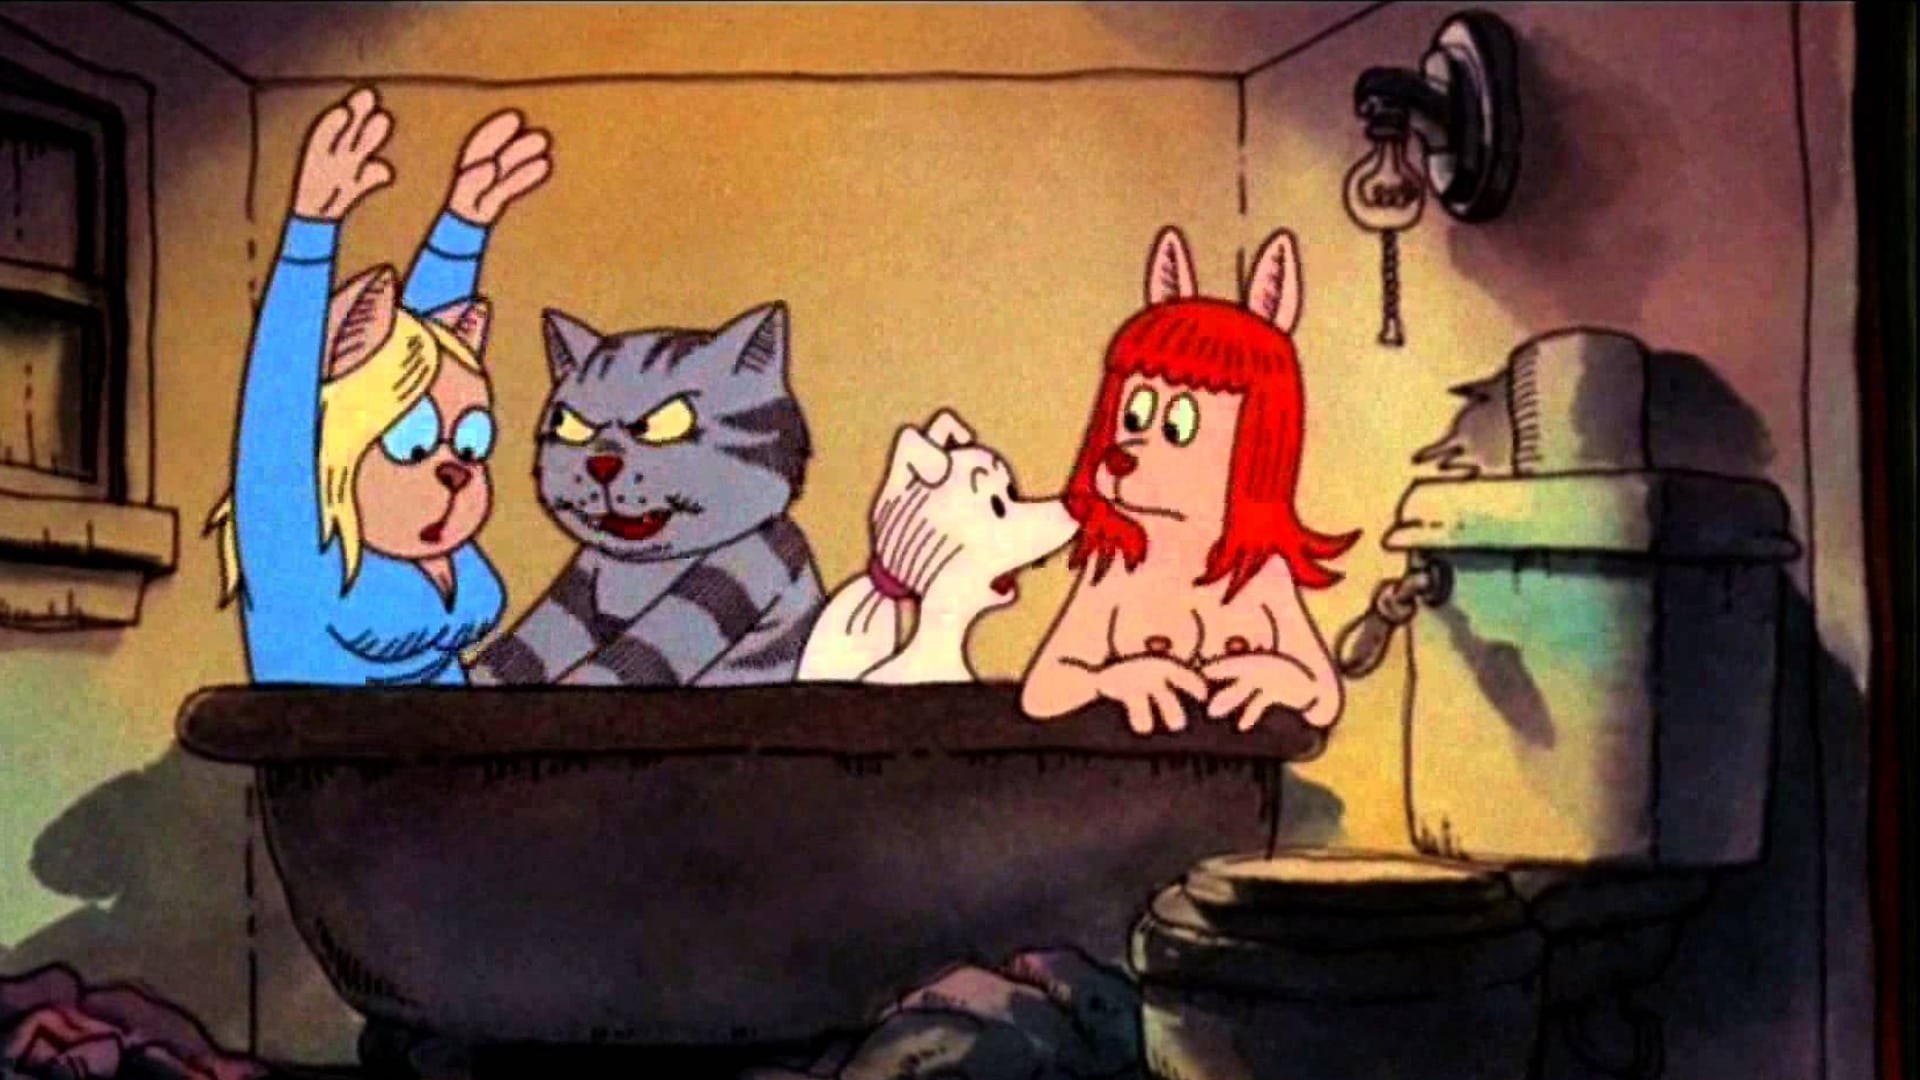 Fritz the Cat (1972)  JPK's Adventures in Cinema